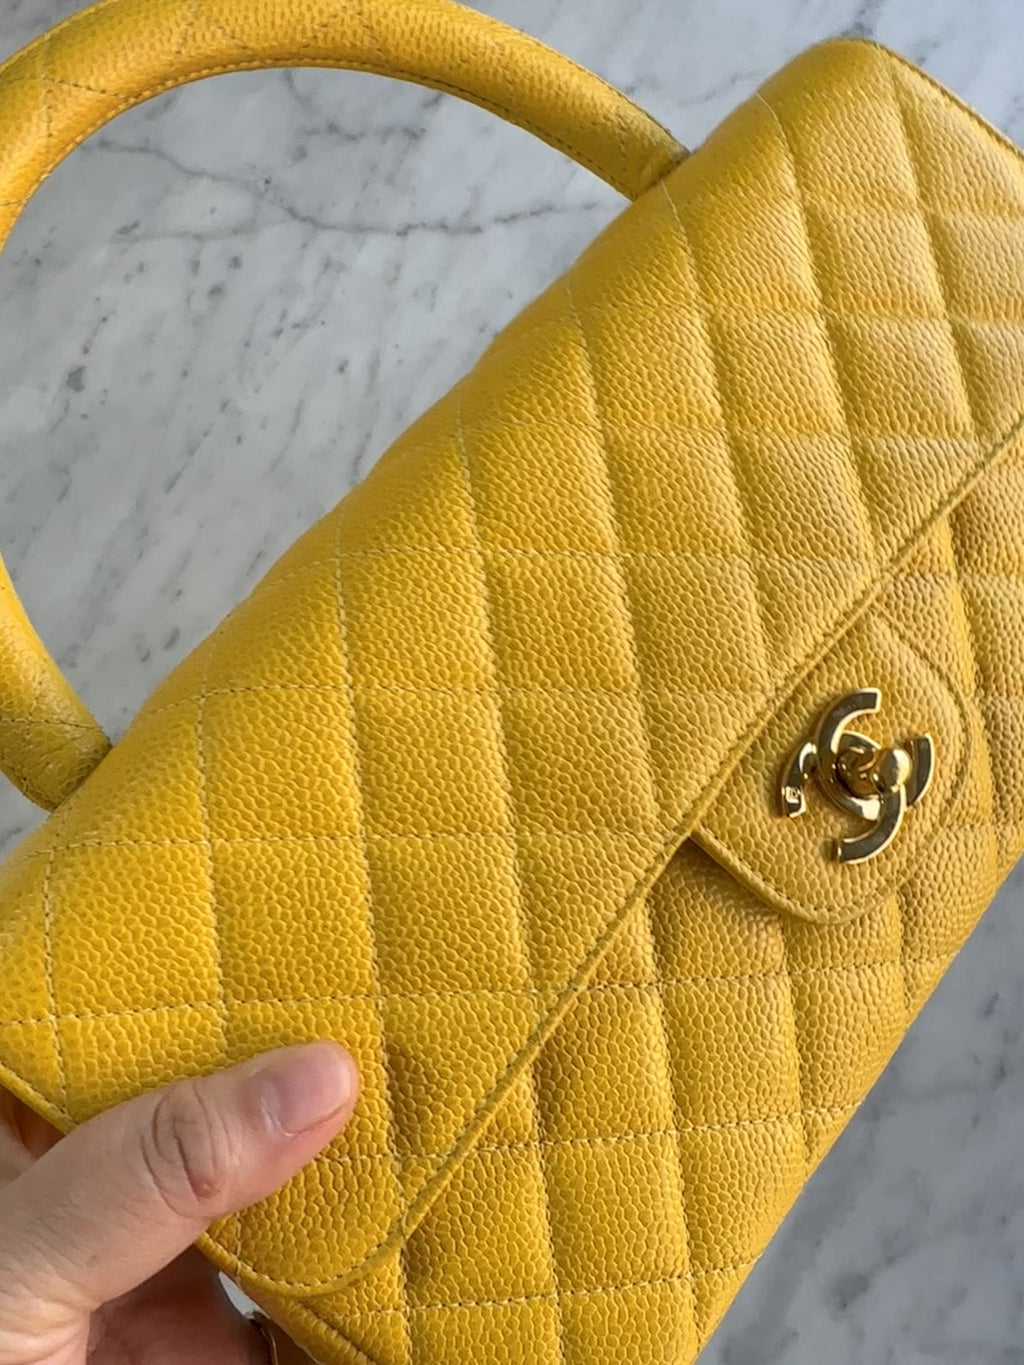 Chanel Yellow Leather Jumbo Classic Double Flap Bag